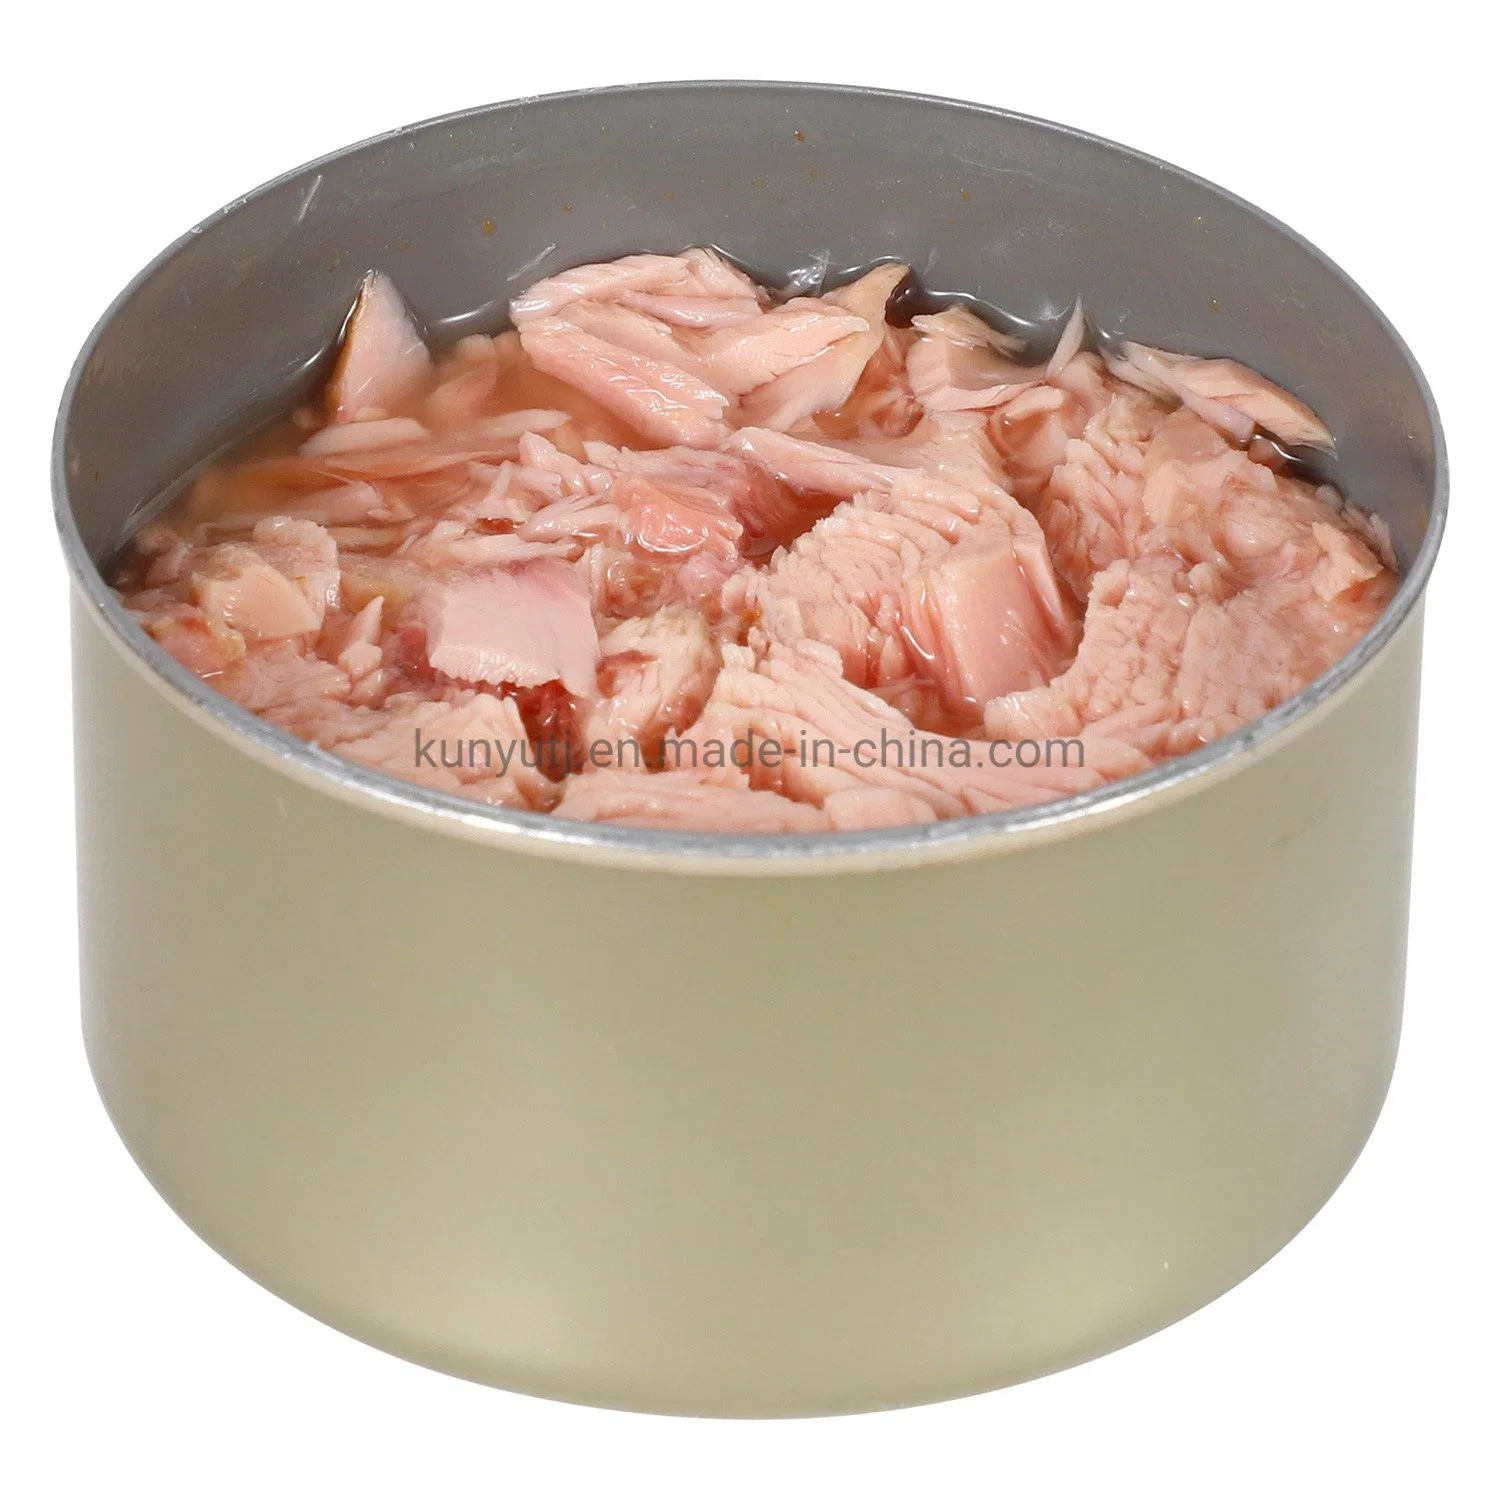 Canned Fish Canned Tuna Flakes in Brine 170g High Quality Tuna